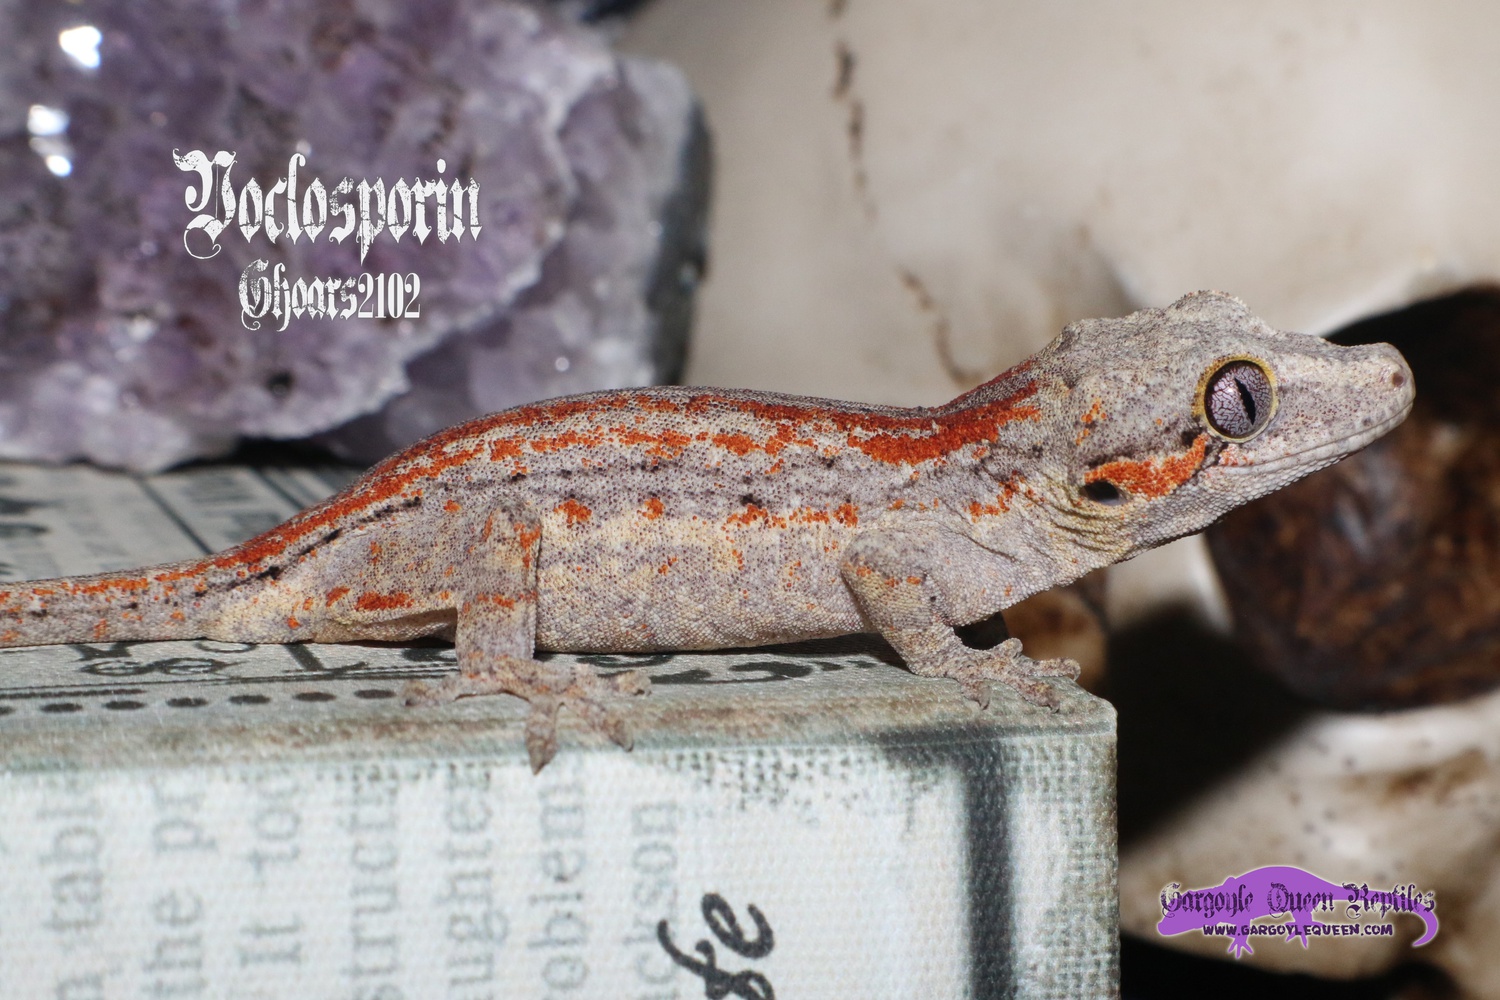 "Voclosporin" Red Stripe Gargoyle Gecko by Gargoyle Queen Reptiles